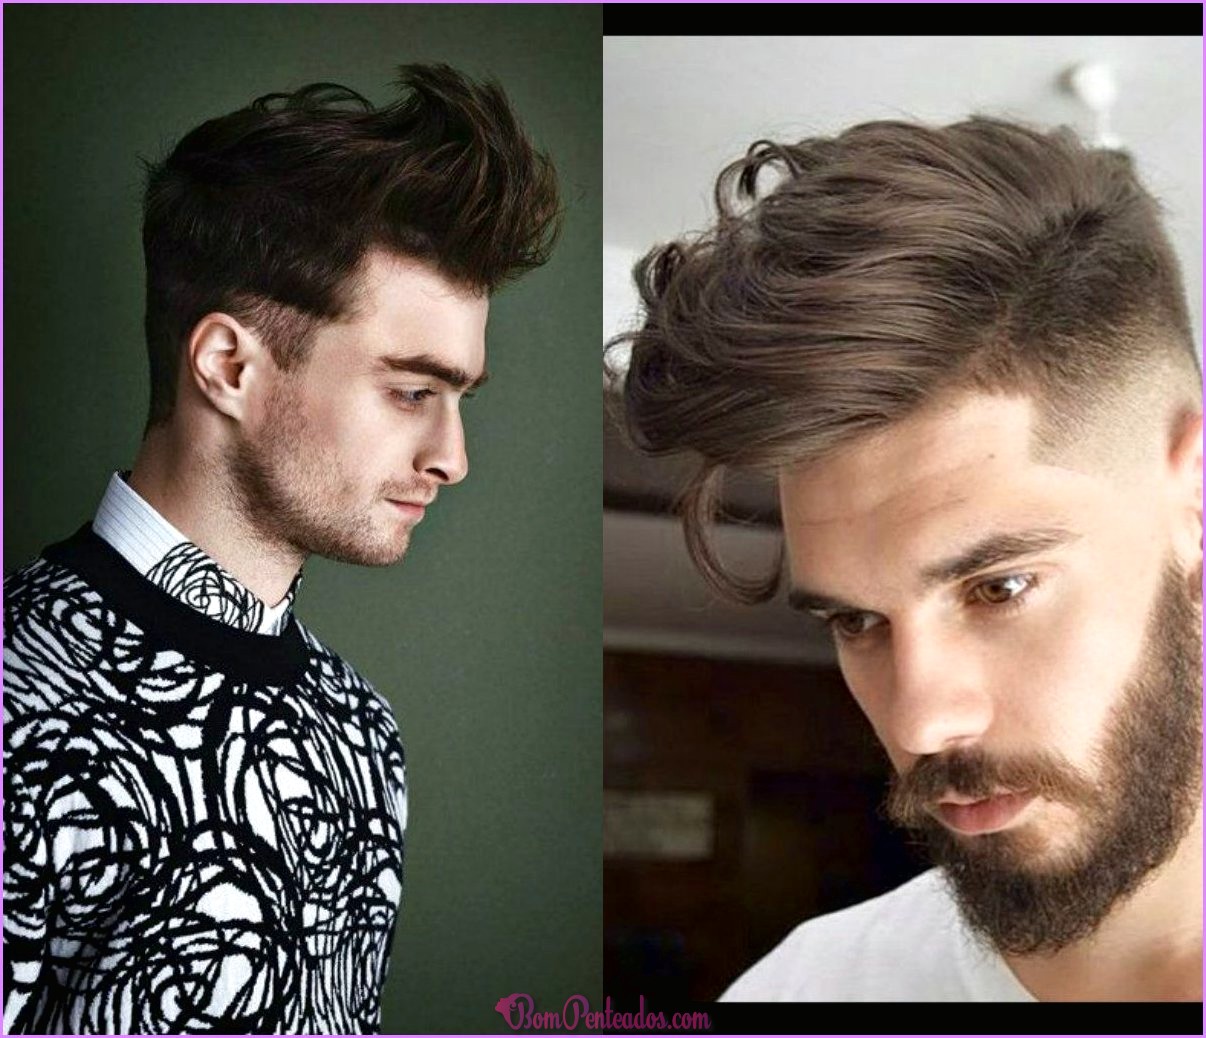 Penteados modernos para homens